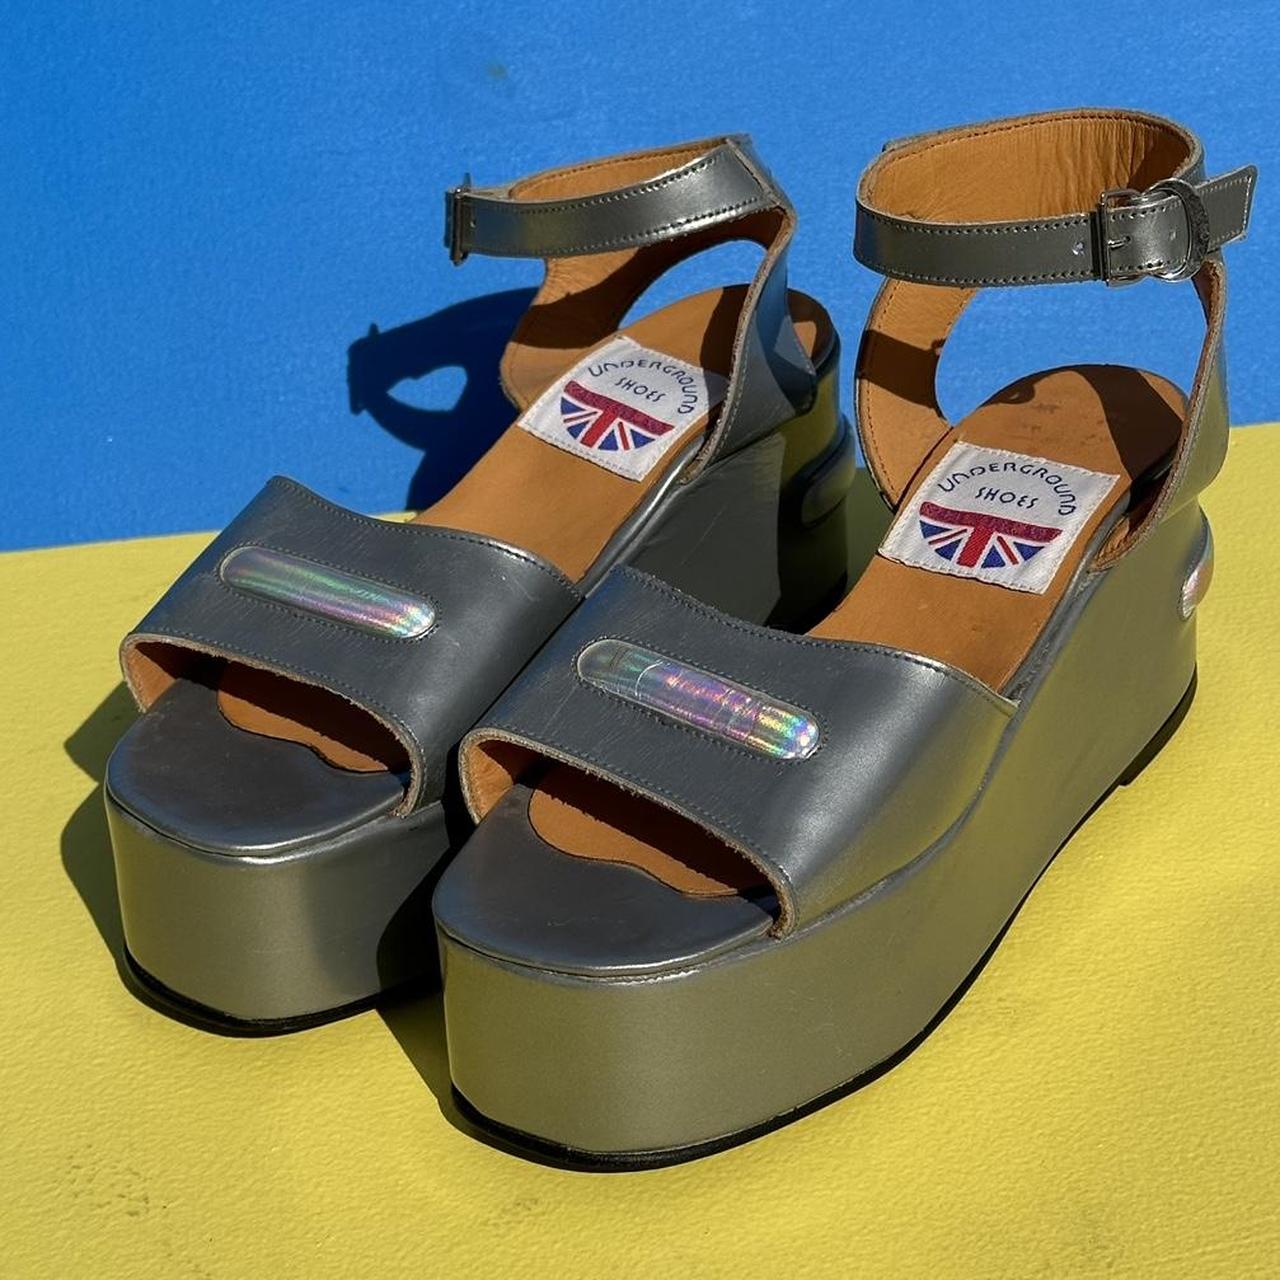 Rare vintage platform sandals made in England by... - Depop